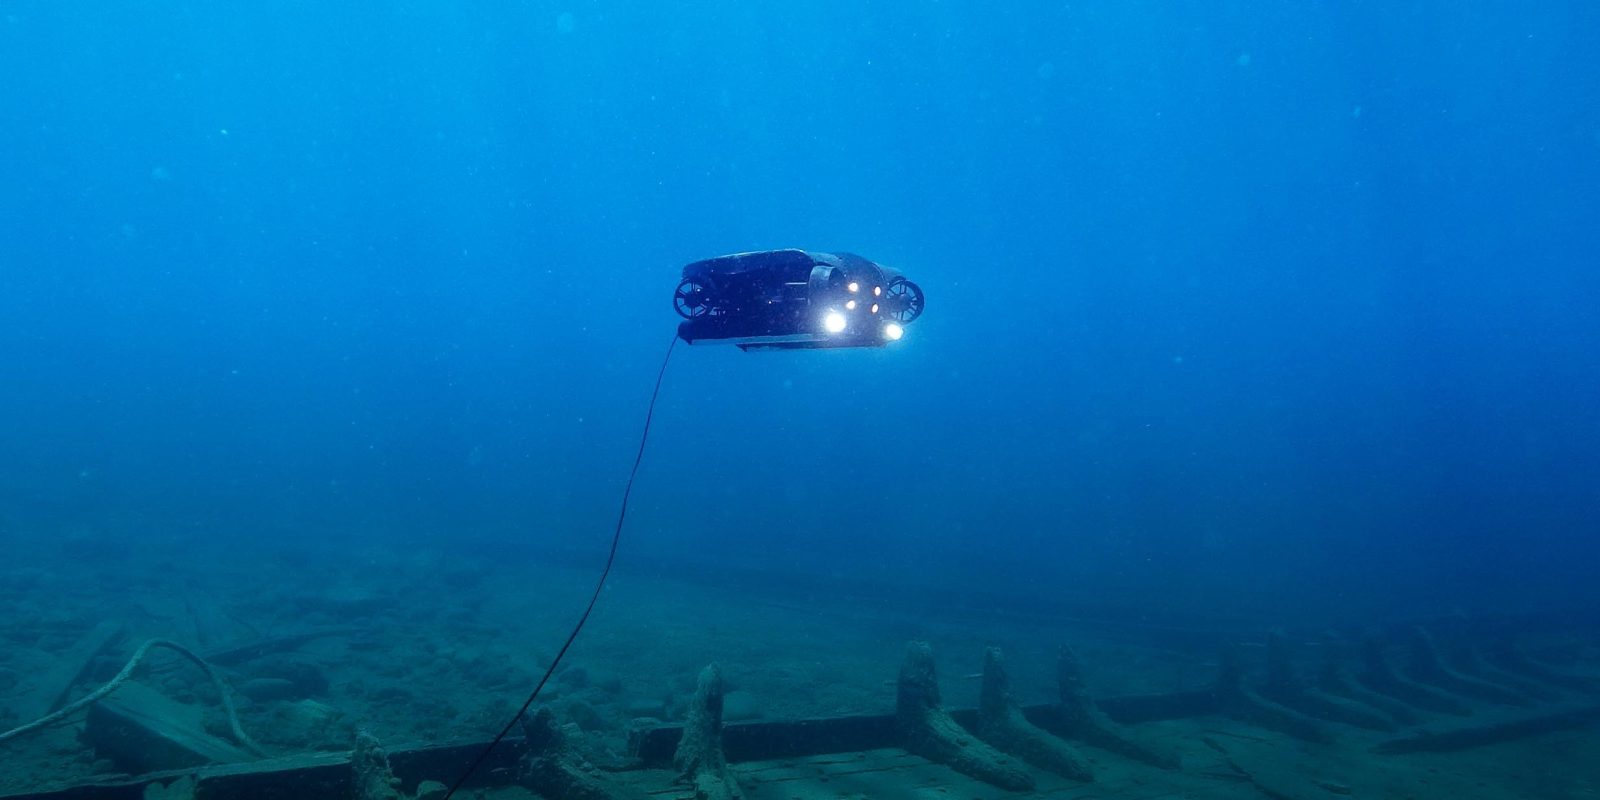 underwater robot hydropower